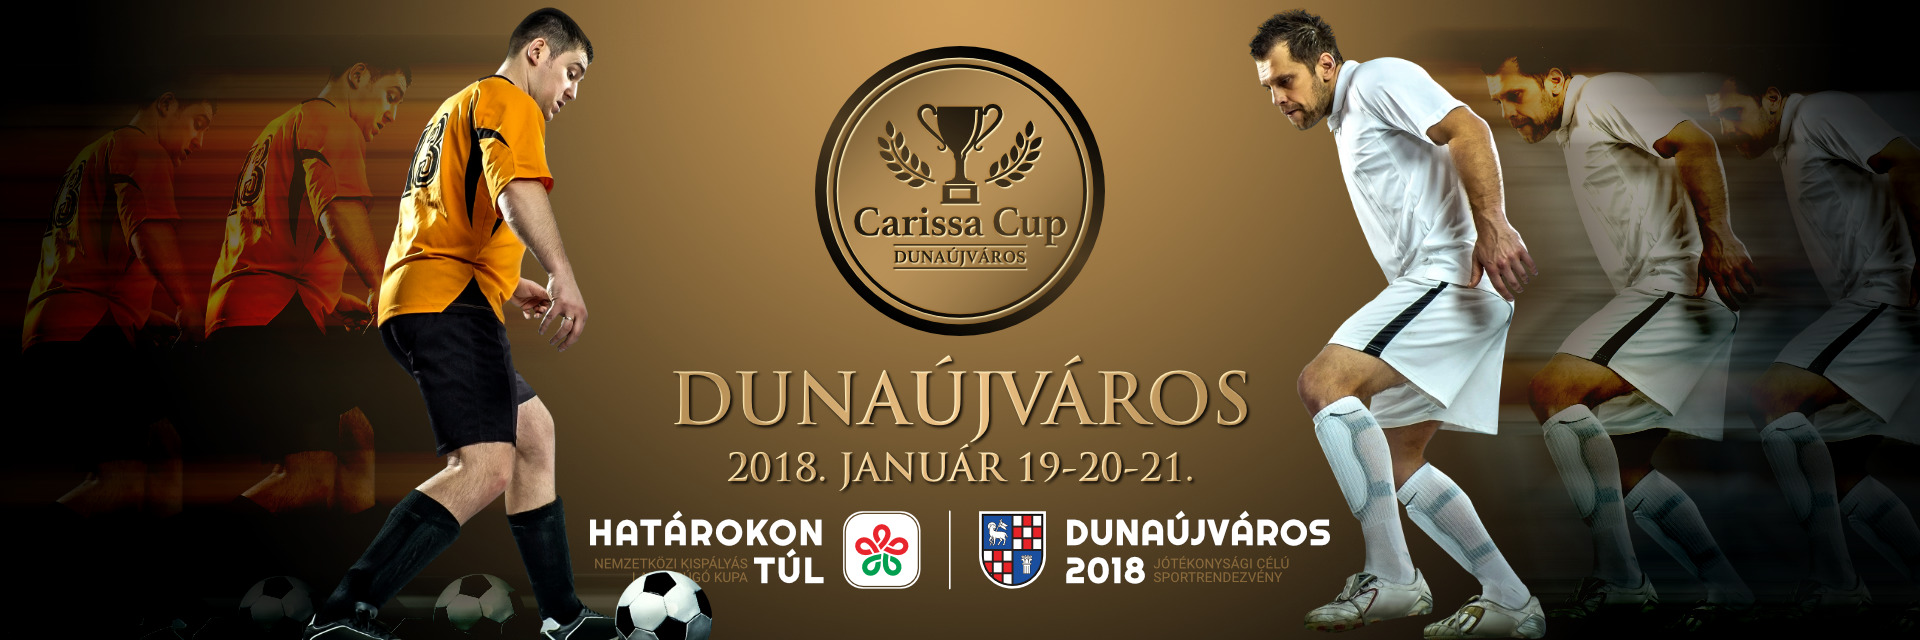 Carissa Cup | Határok nélkül!